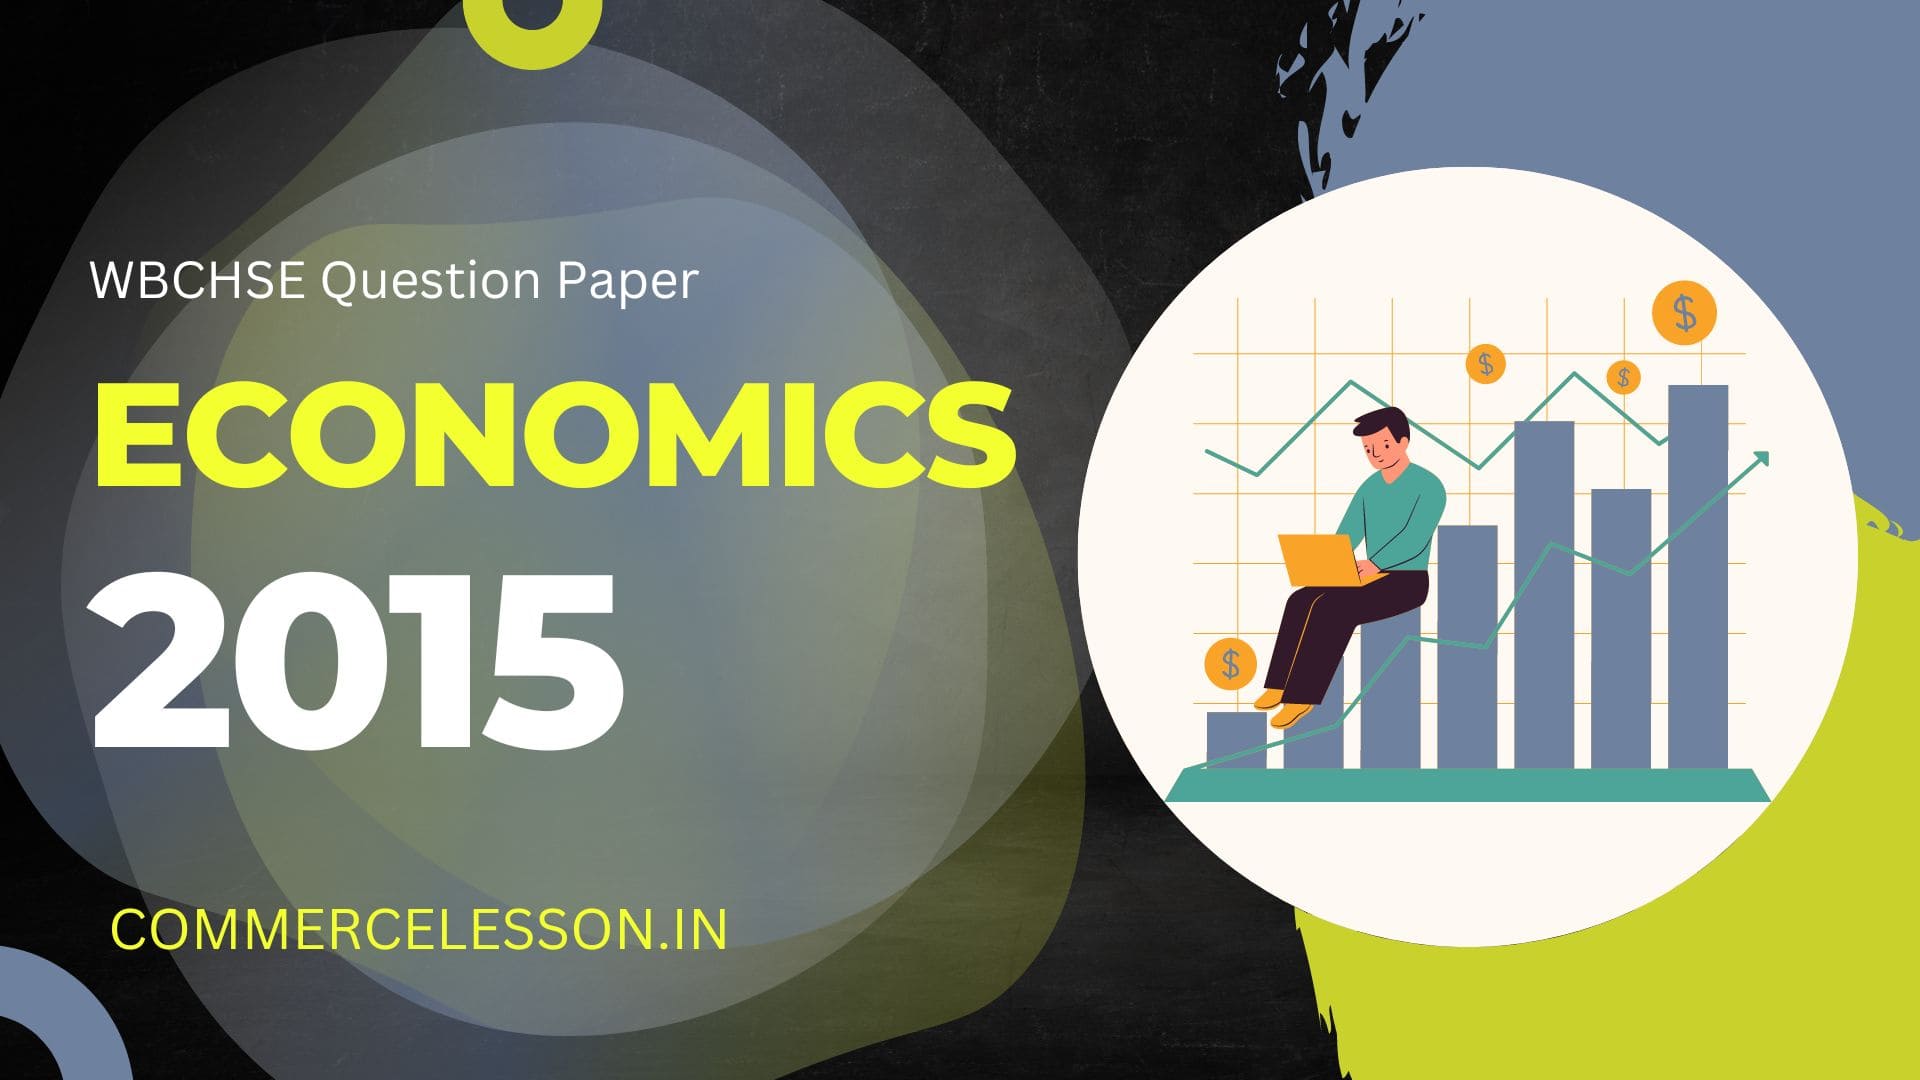 WBCHSE Economics Question paper 2015